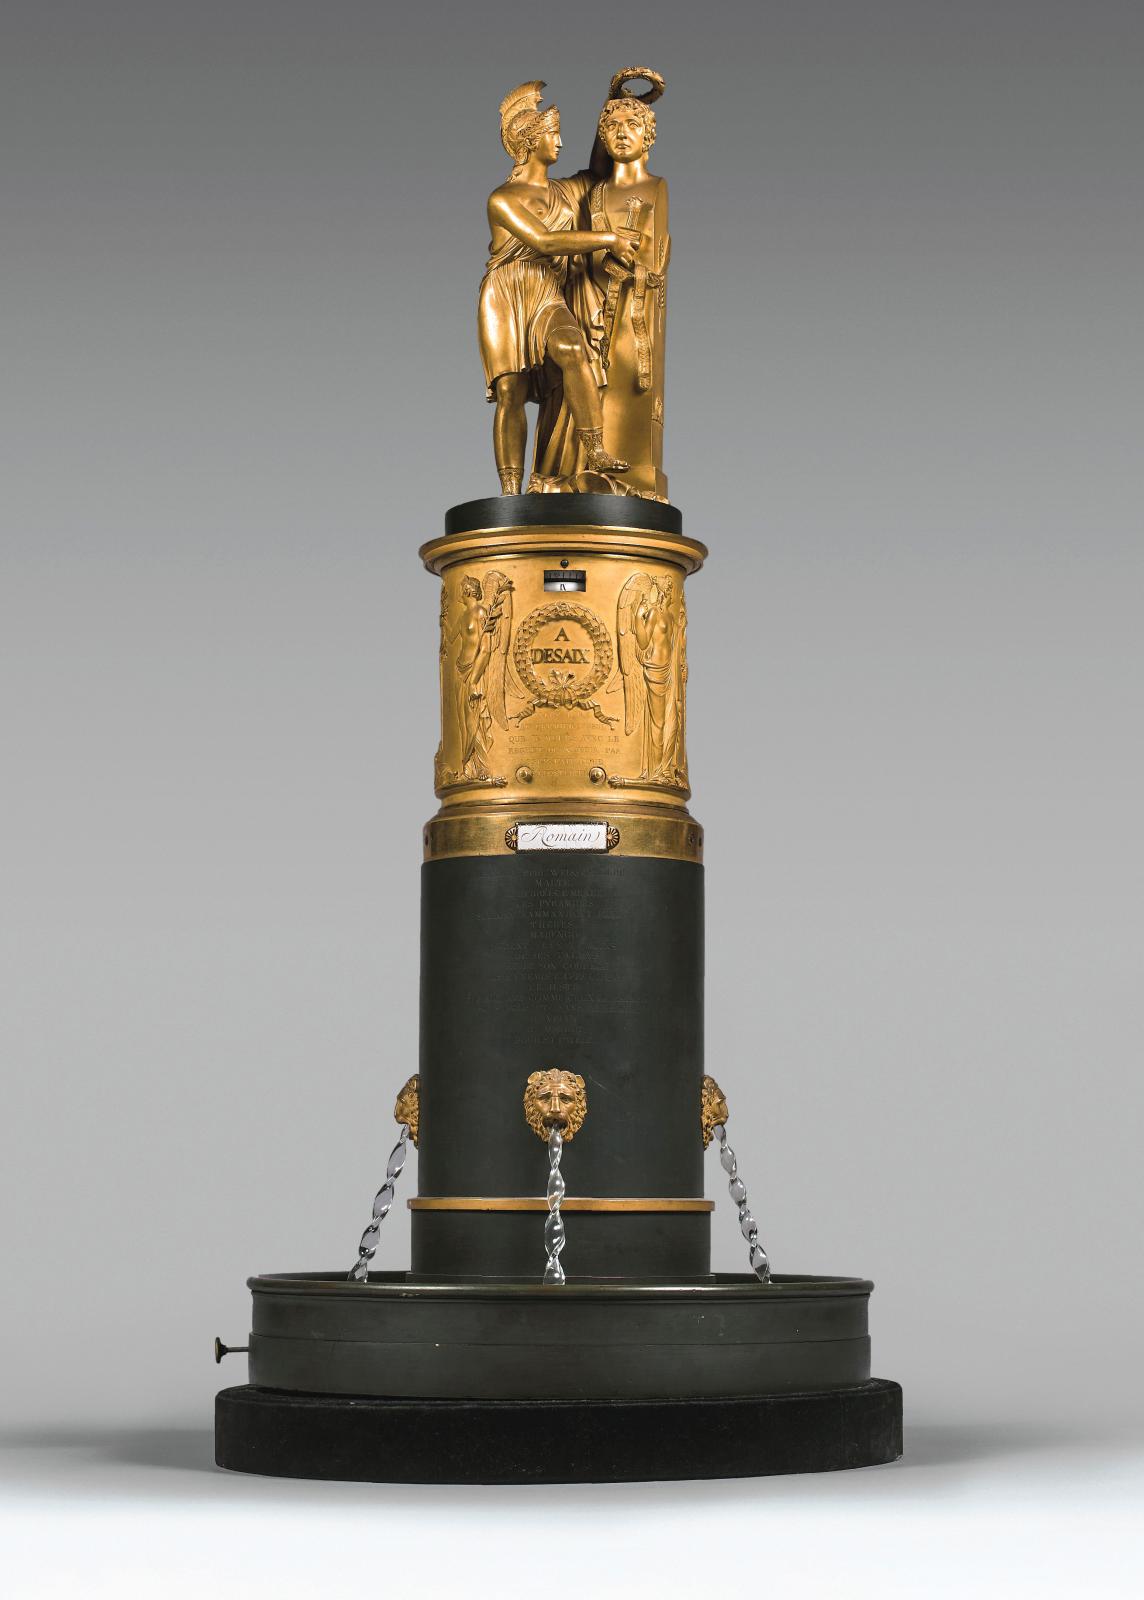 Époque Empire. Pendule simulant une fontaine en bronze doré et bronze patiné surmontée d’une statue allégorique à la mémoire du général De